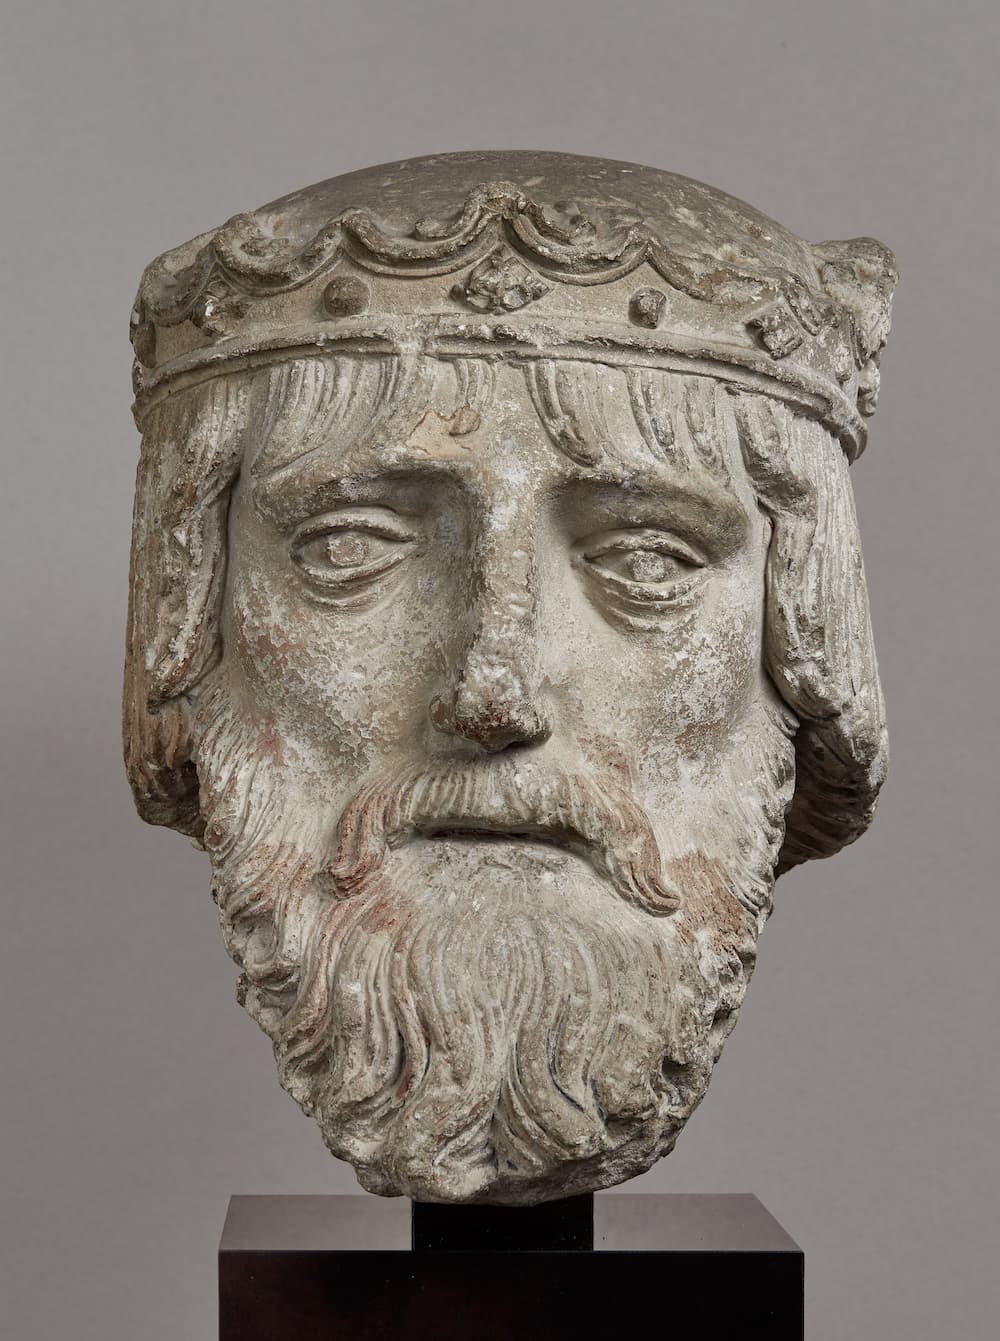 Tête de roi, France, XIVe siècle, pierre